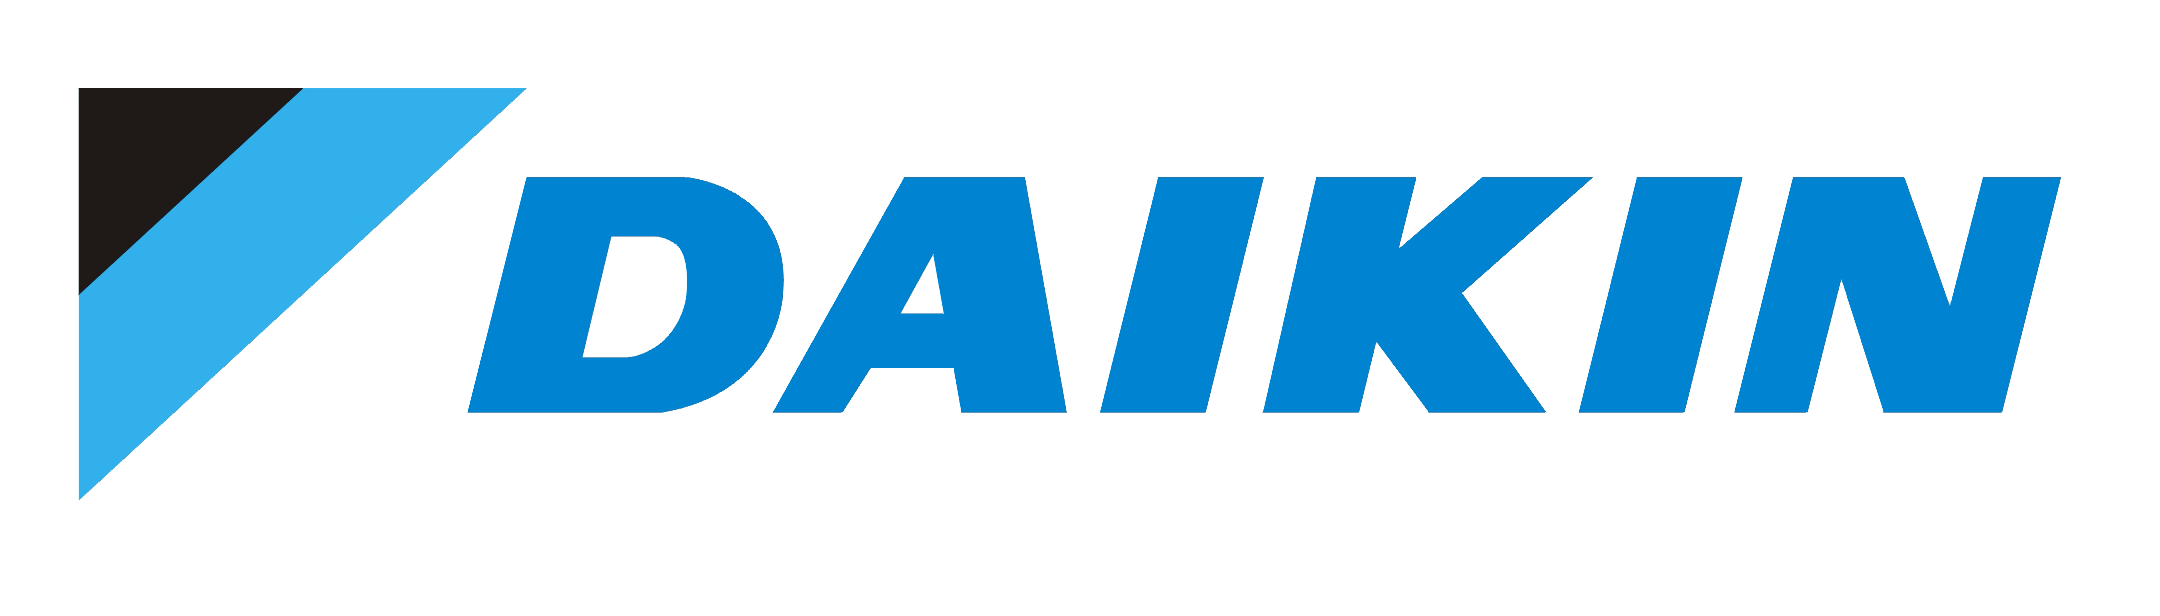 Daikin-logo-e1582741132164.png